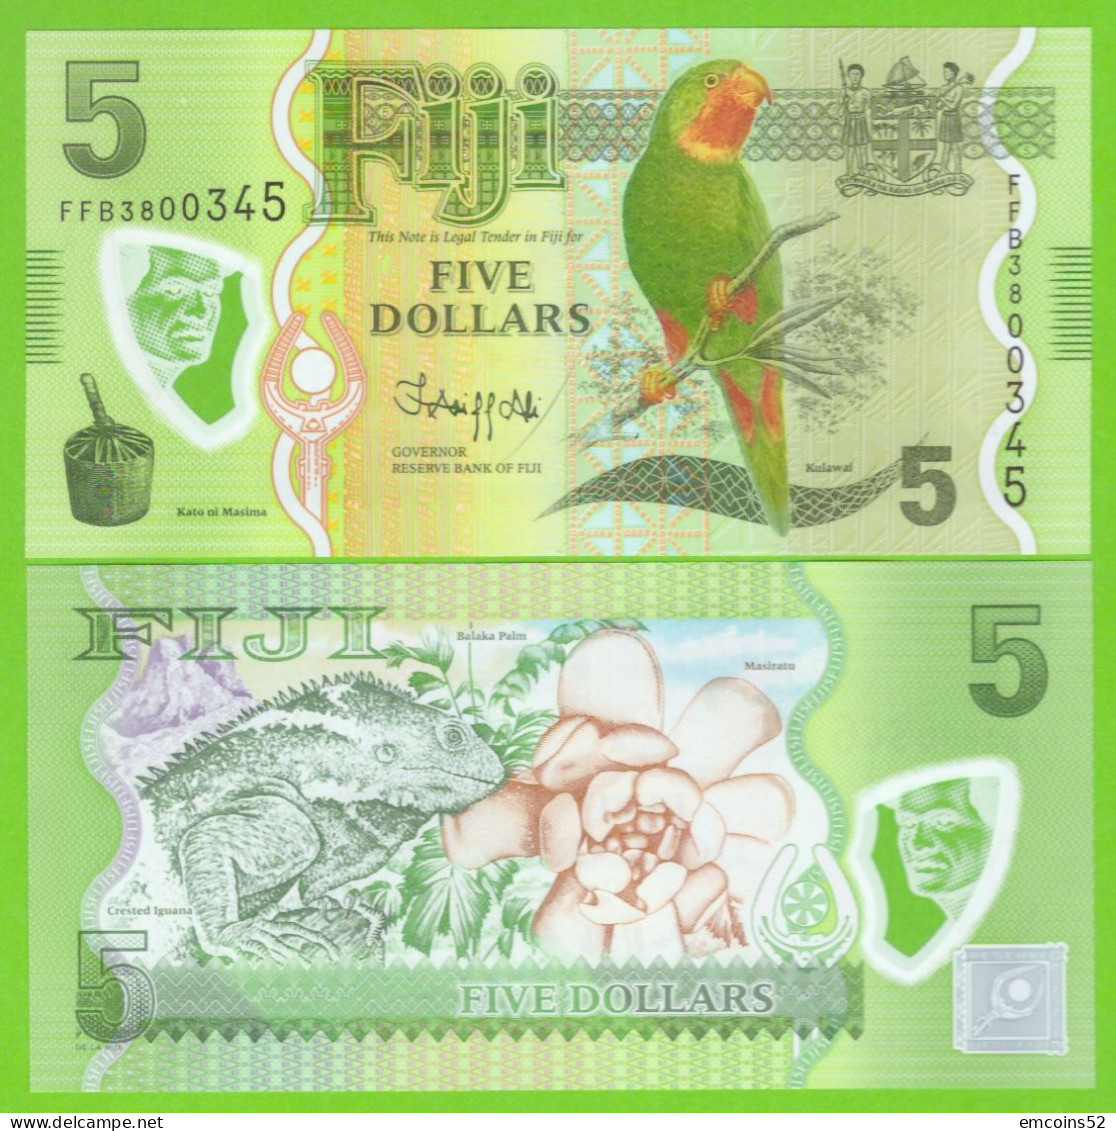 FIJI 5 DOLLARS 2012/2022  P-115(2) UNC - Figi